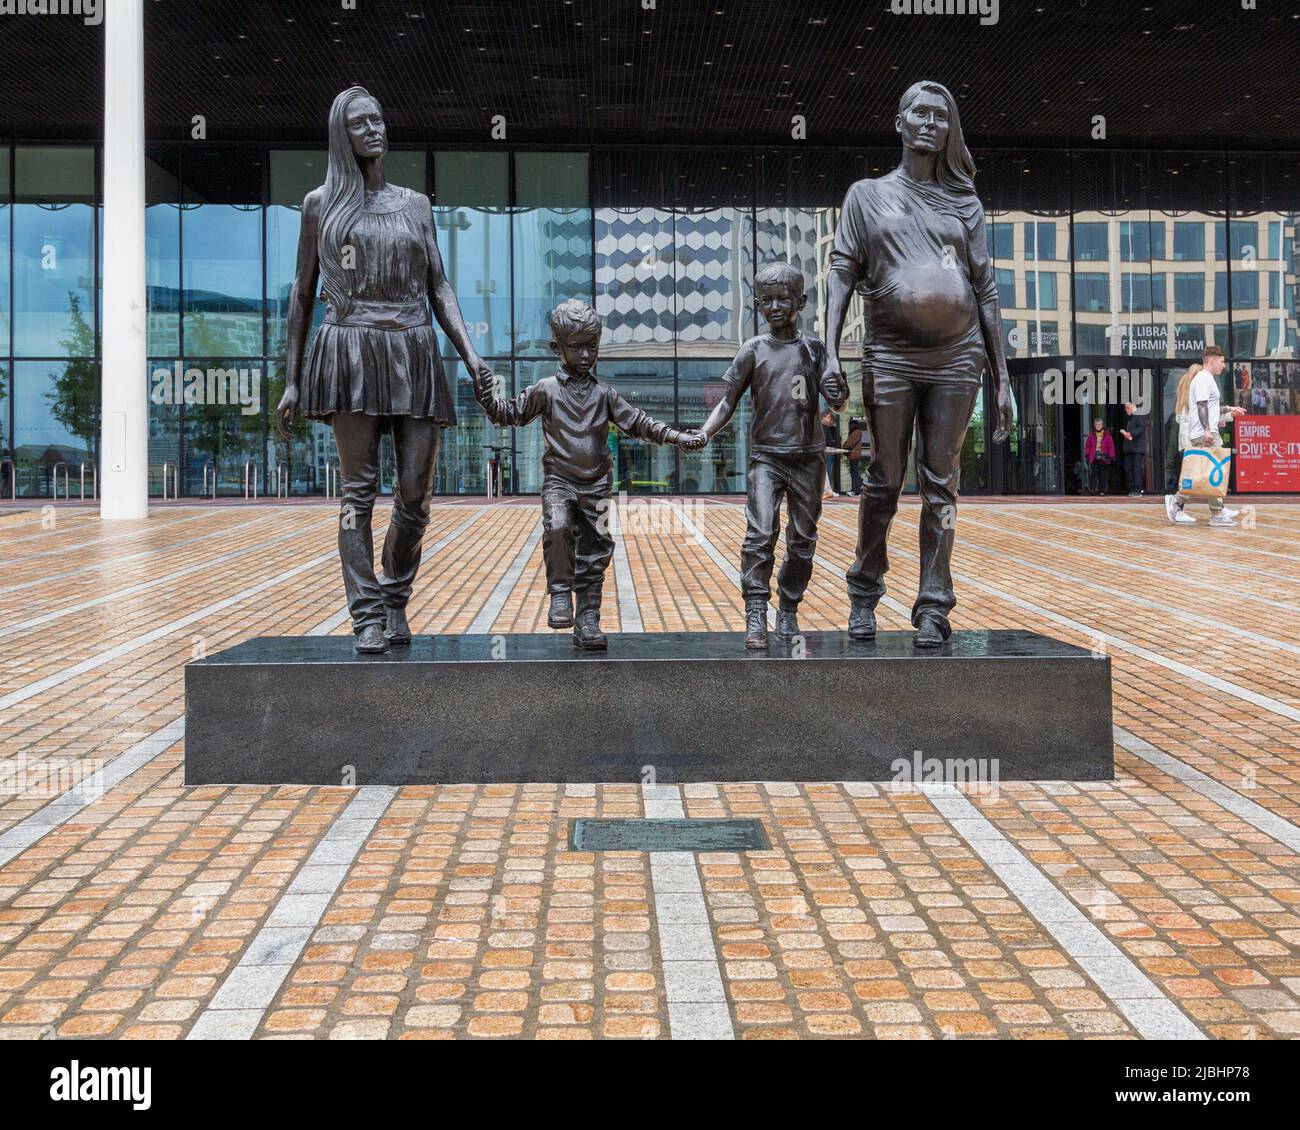 Eine Real Birmingham Familie ist eine Bronzestatue der Künstlerin Gillian Wearing. Es vermittelt die Idee, dass das, was eine Familie ausmacht, nicht fixiert ist. Stockfoto